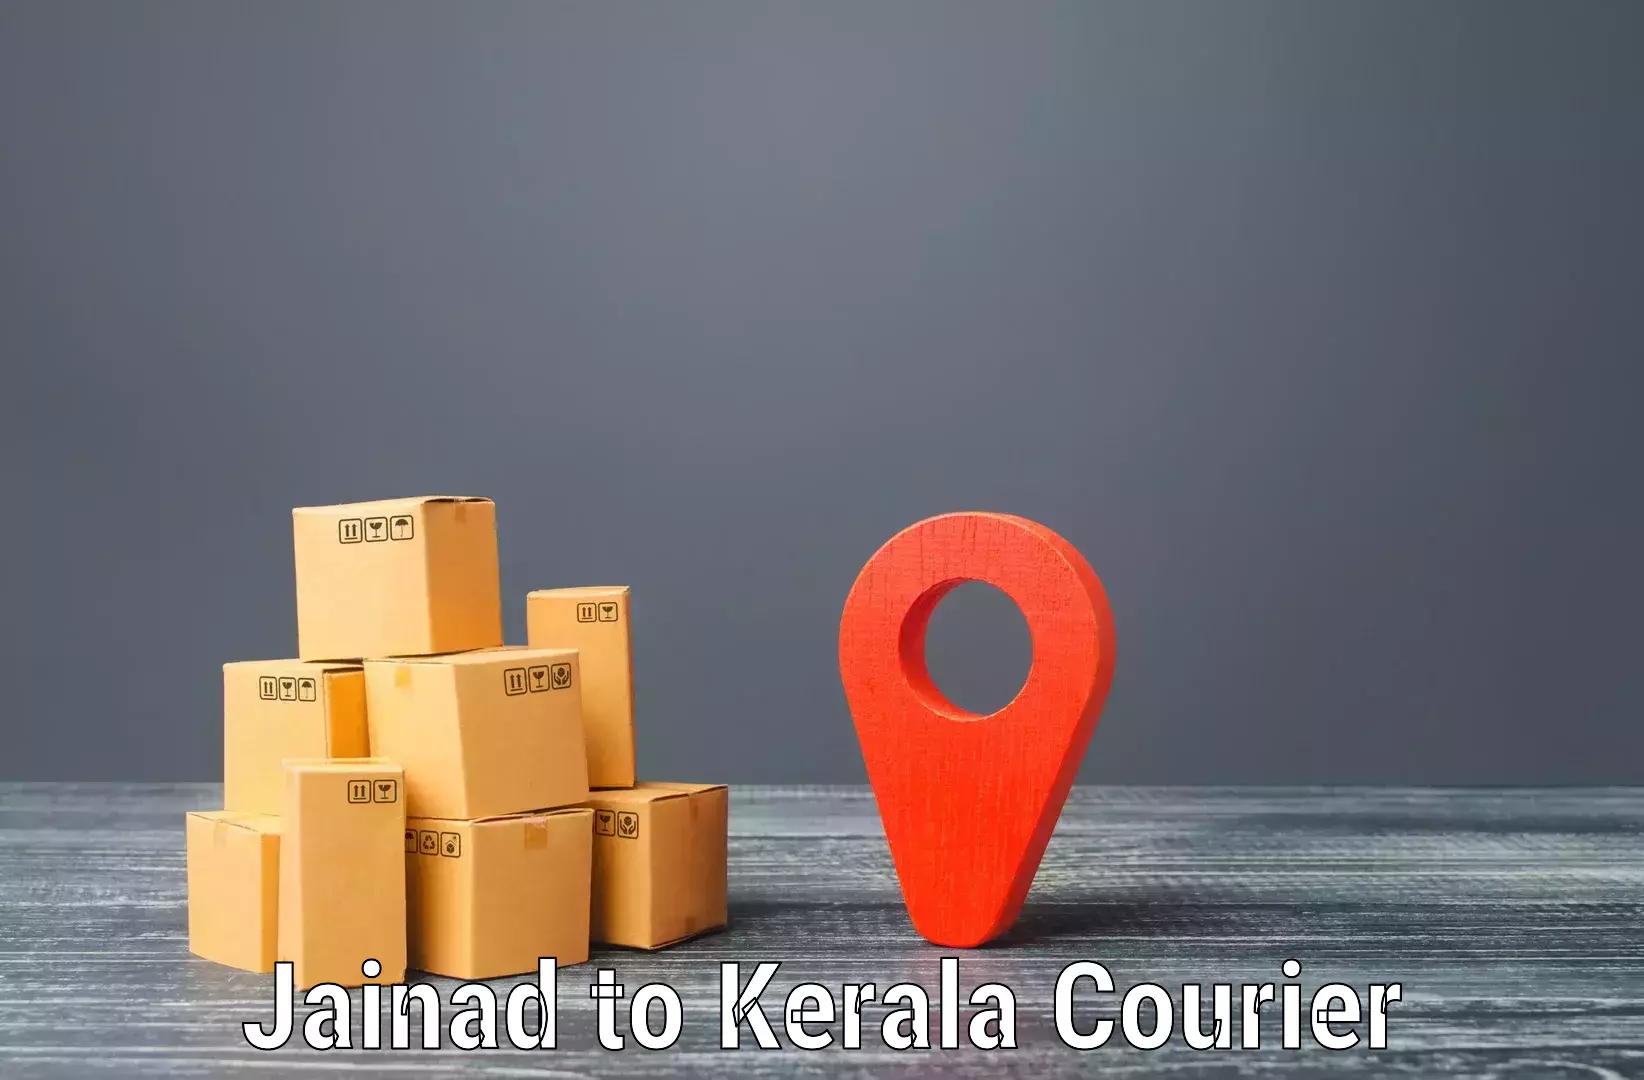 Next-generation courier services Jainad to Hosdurg